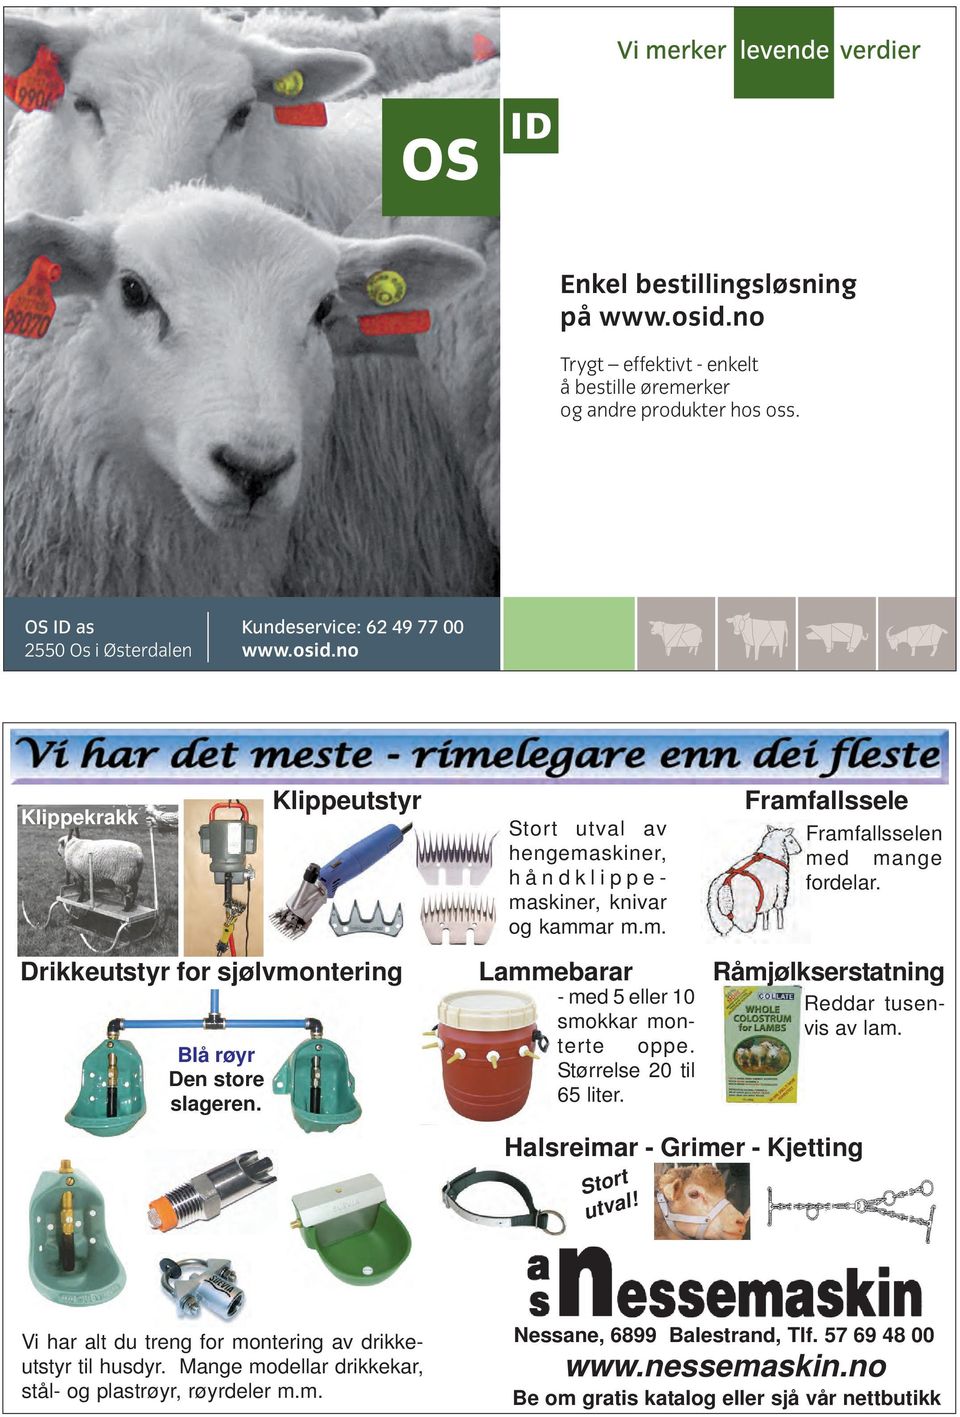 Råmjølkserstatning Halsreimar - Grimer - Kjetting Stort utval! Reddar tusenvis av lam. Vi har alt du treng for montering av drikkeutstyr til husdyr.